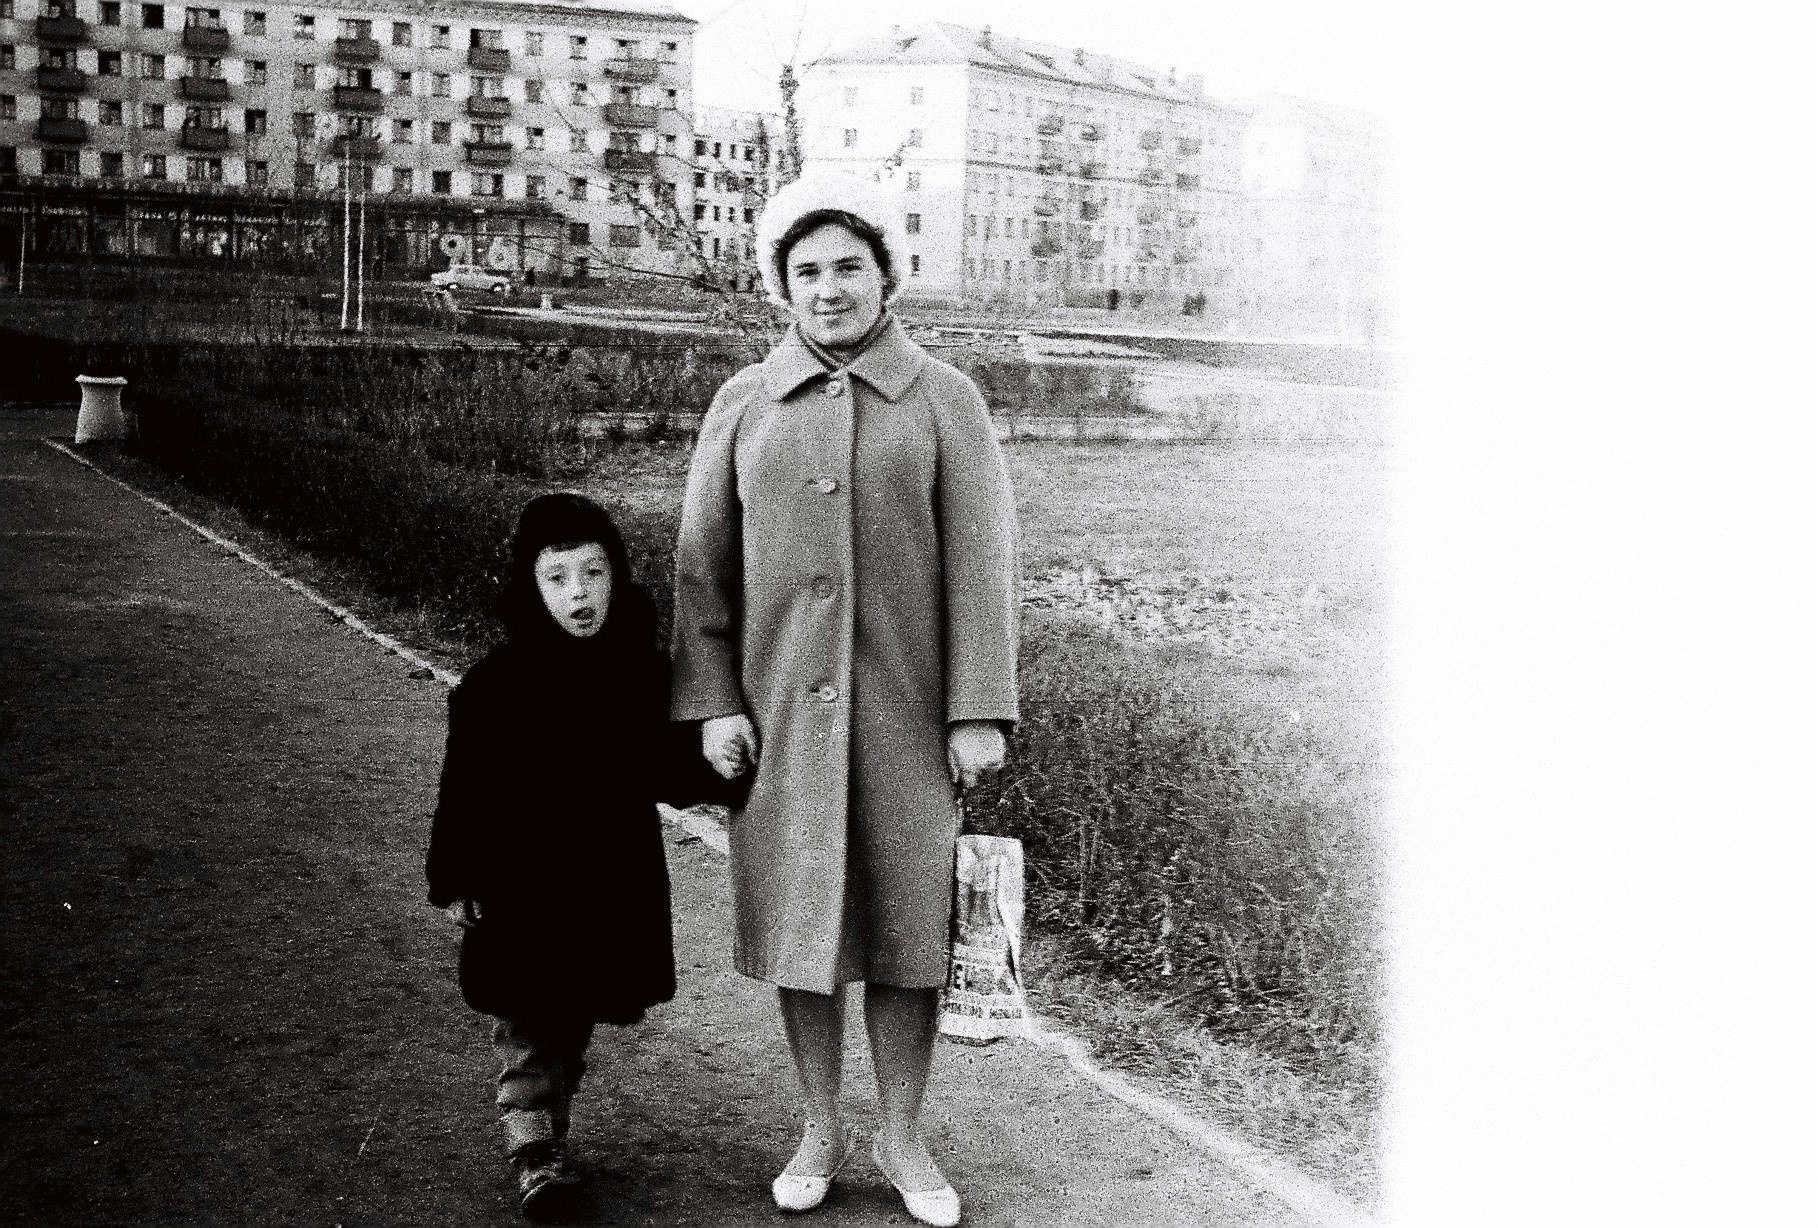 А это Игорь вместе с мамой Людмилой Егоровной. Справа от них — нынешний сквер имени Андреевского, а в доме слева был универсам «Пейте черный кофе»